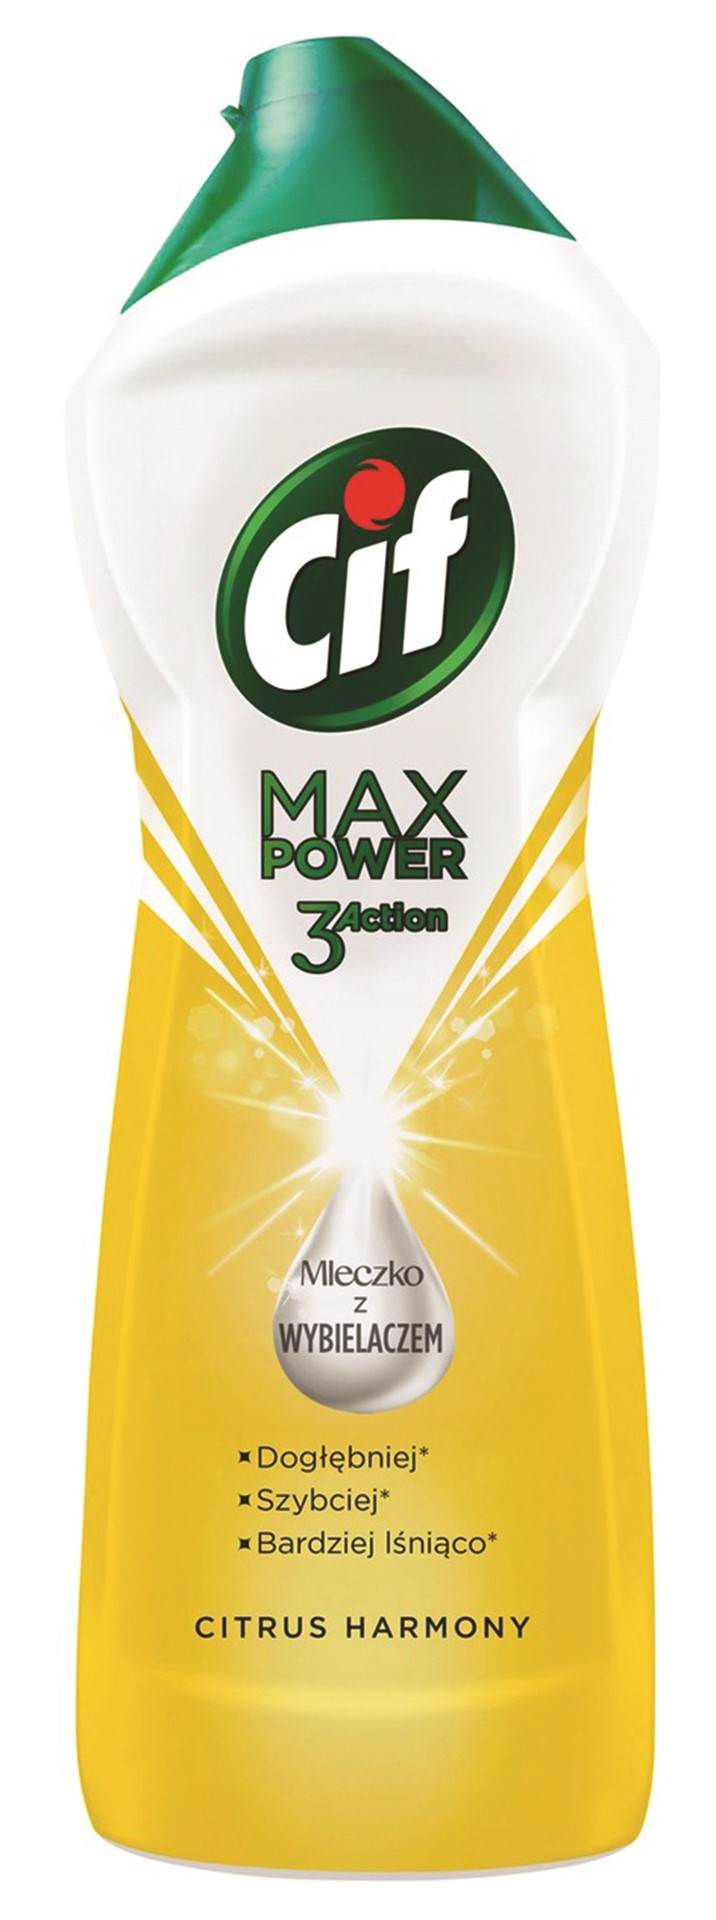 Mleczko do czyszczenia CIF Max Power 3 Action Cytryna, z wybielaczem, 780g